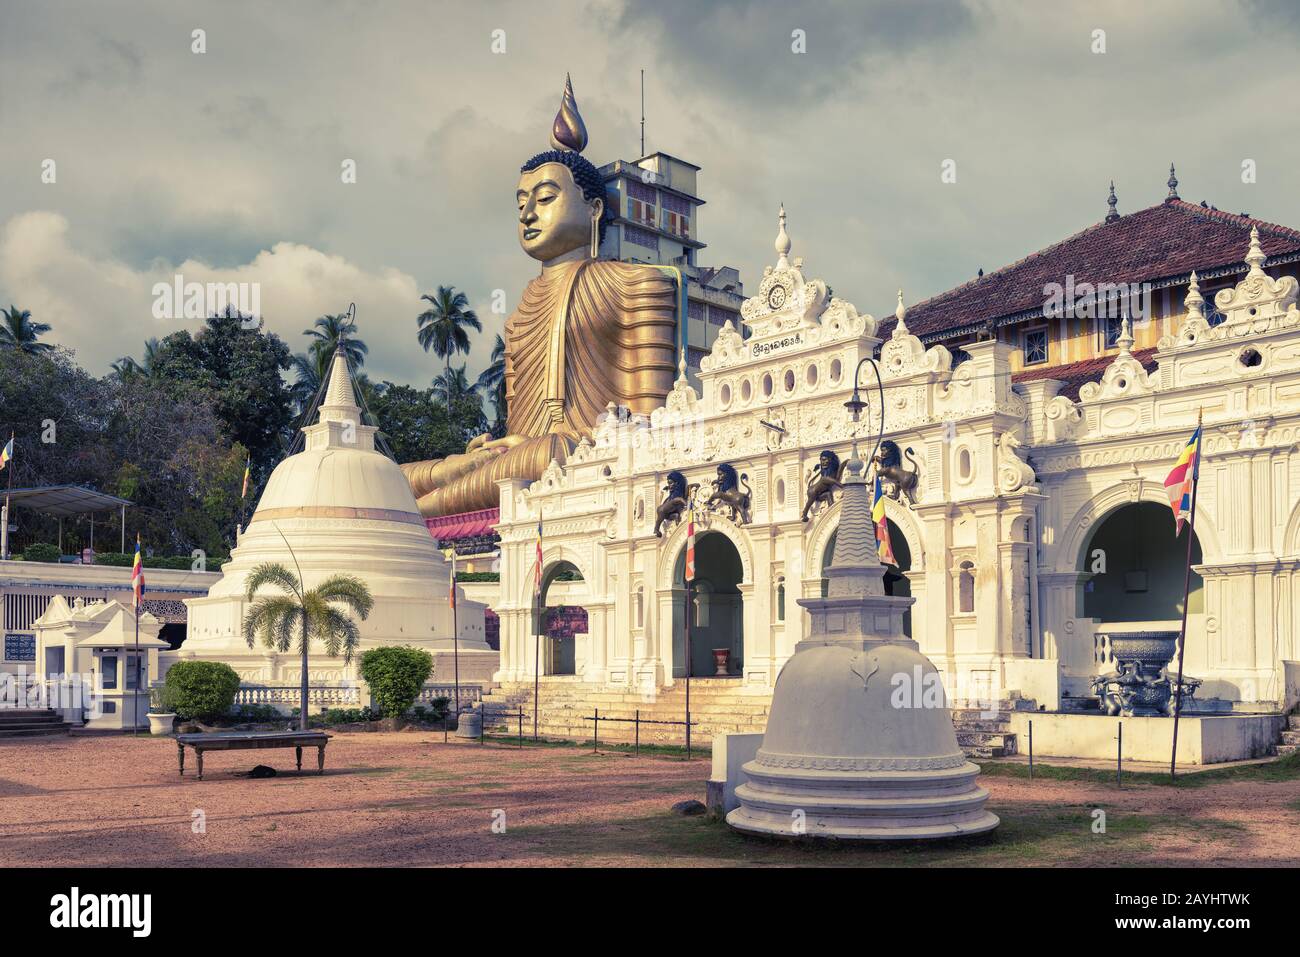 Wewurukannala Vihara est le vieux temple bouddhiste de la ville de Dickwella, au Sri Lanka. Une statue de Bouddha assis de 50 m de haut est la plus grande du Sri Lanka. Banque D'Images